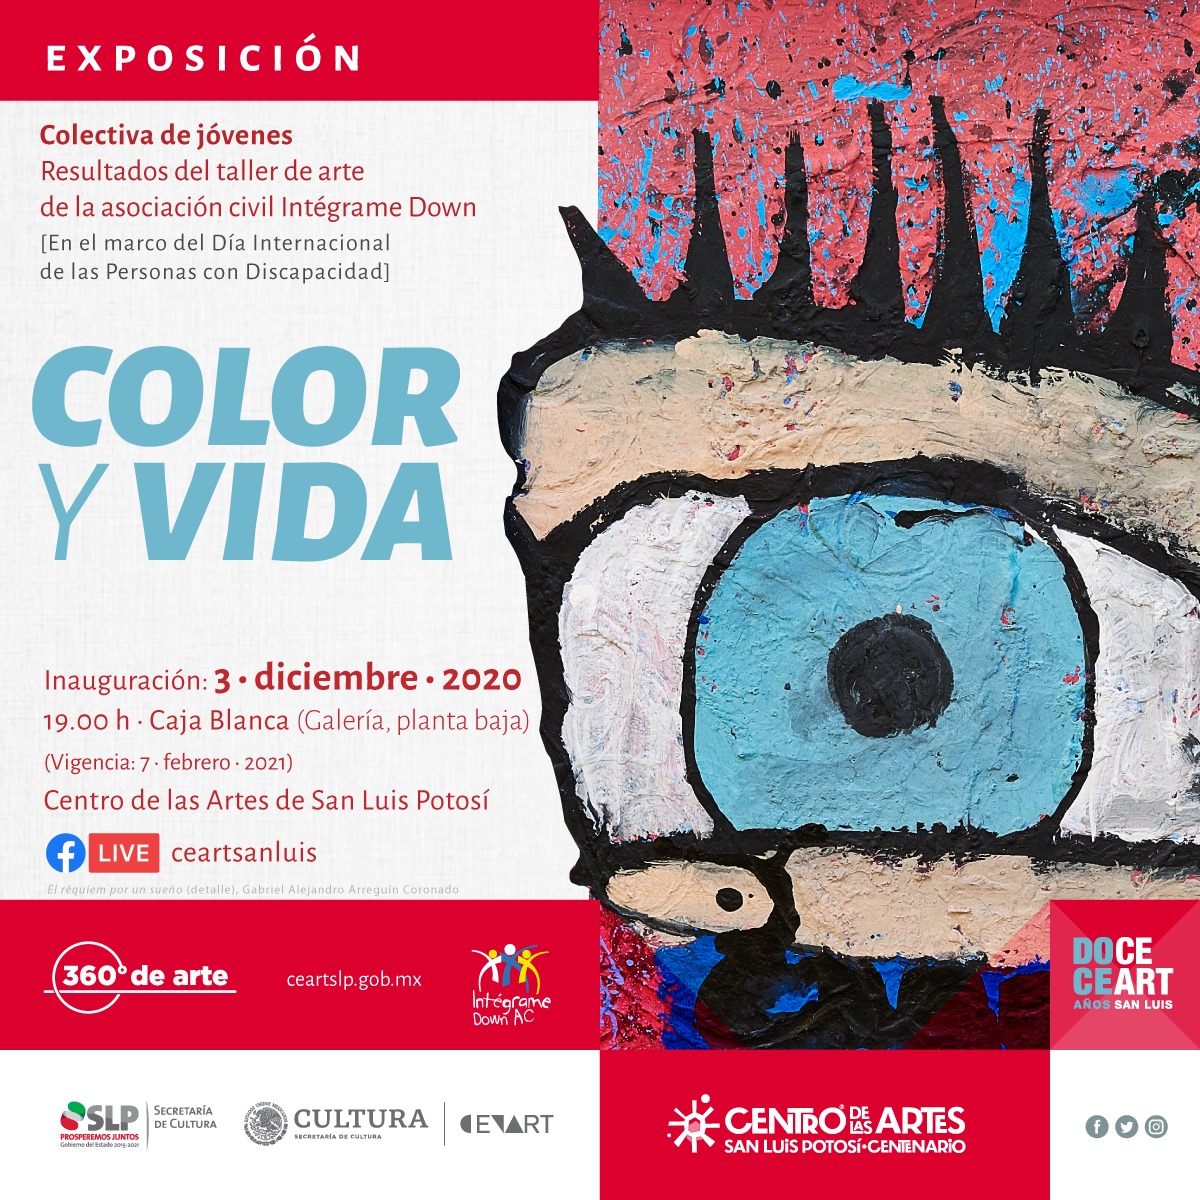 Inaugurarán exposición “Color y vida” en el CEARTSLP